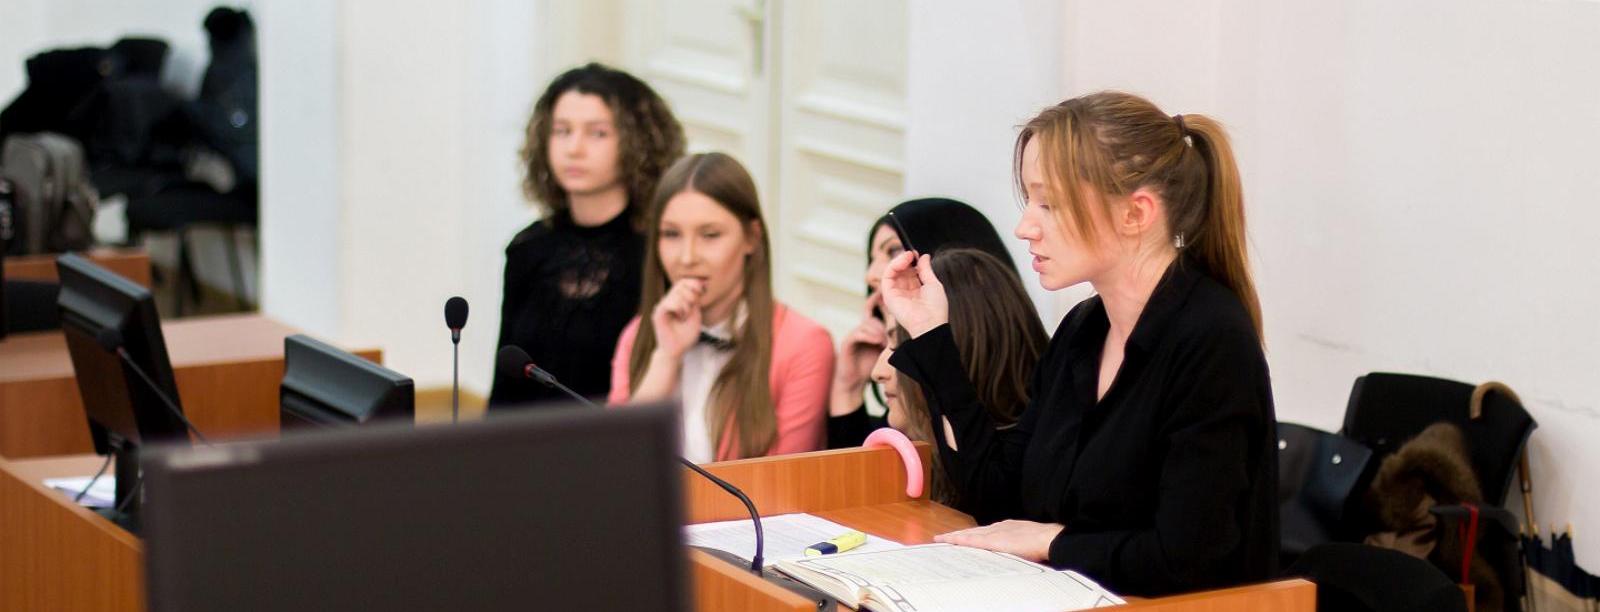 Završena stručna studentska praksa za studente Pravnog fakulteta Univerziteta u Sarajevu i Zenici